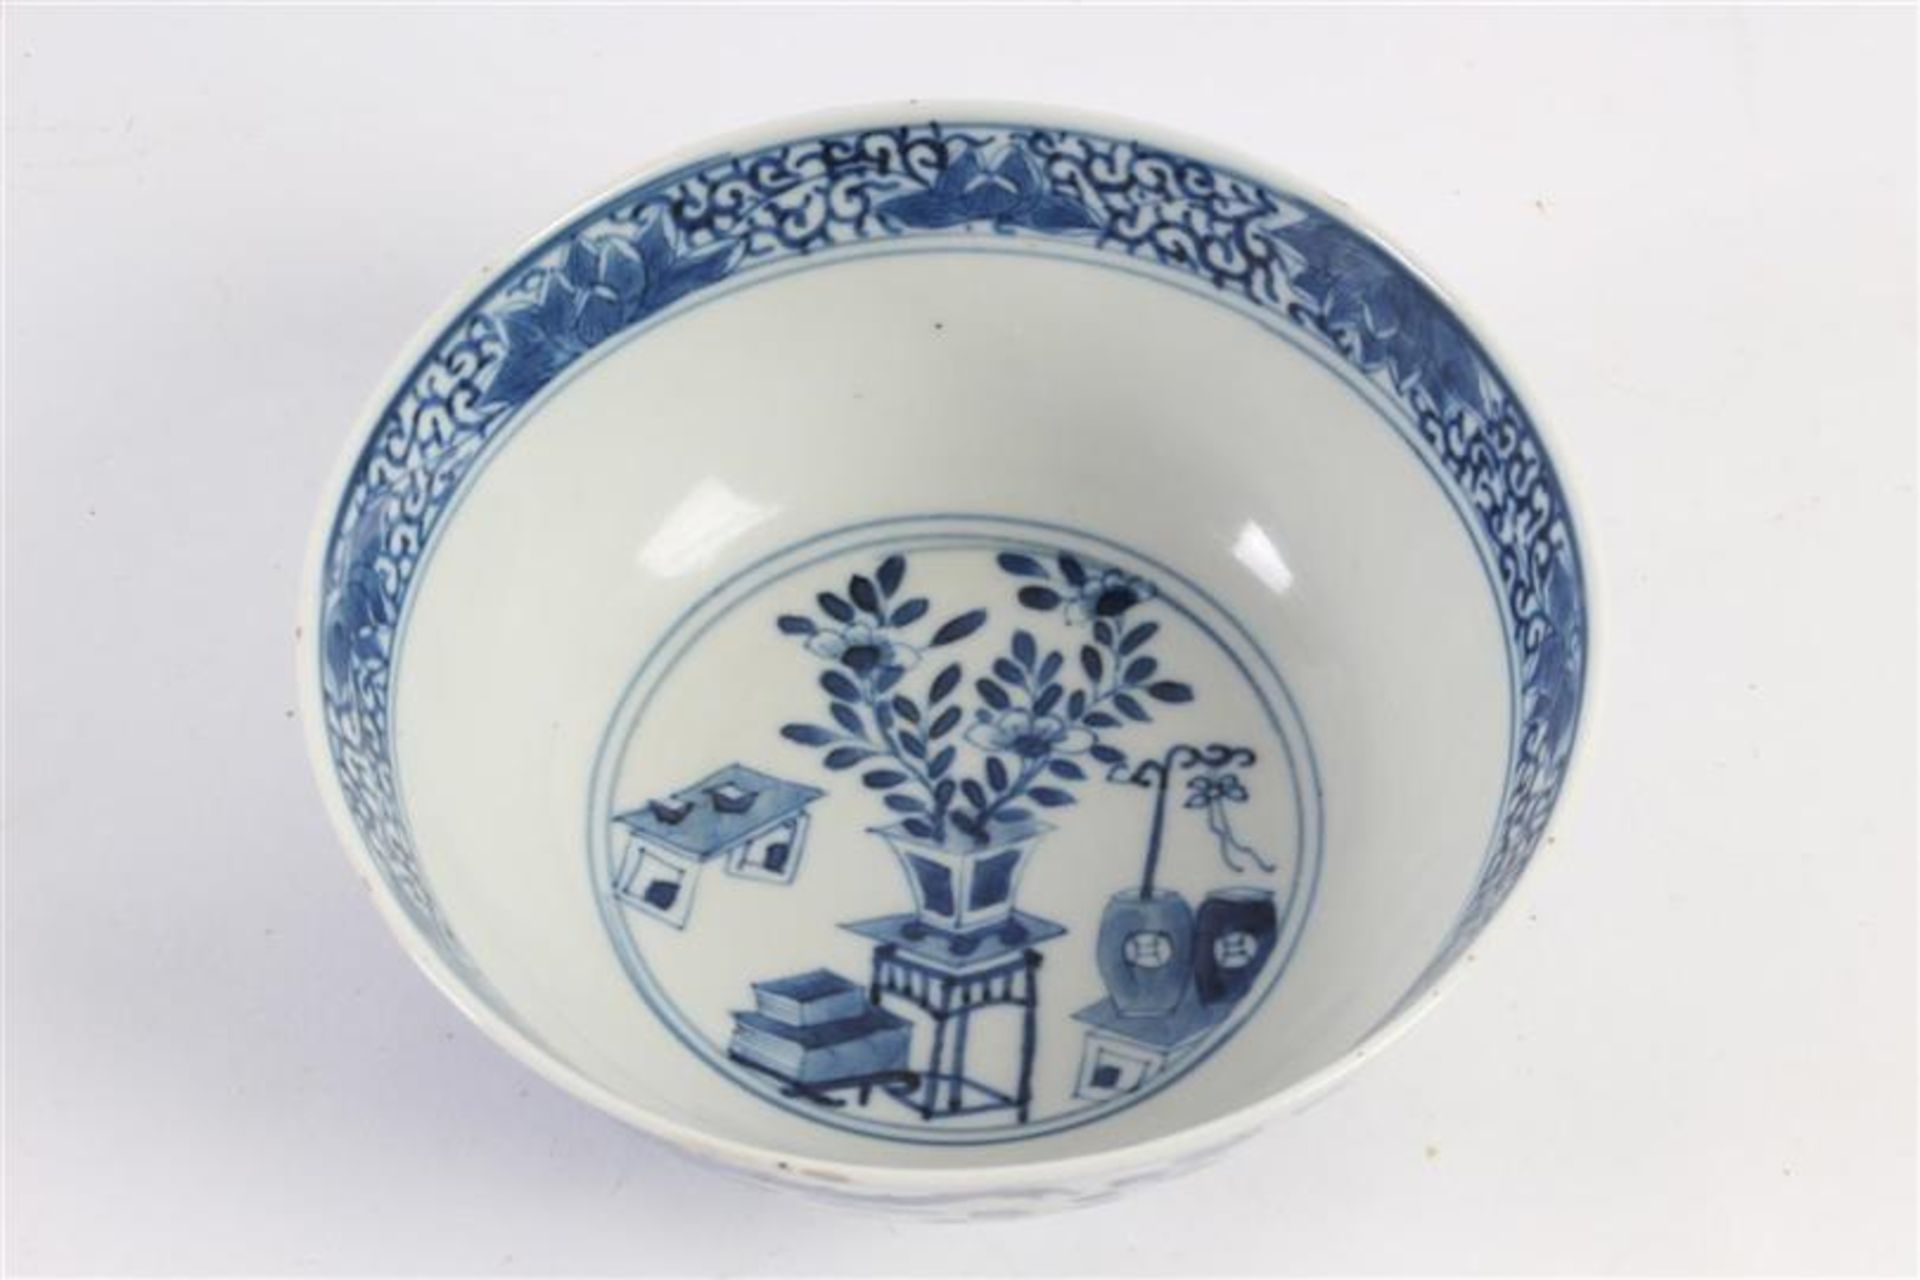 Chinees porseleinen kom met decor van regendraken, 19e eeuw. D: 14.5 cm. - Bild 2 aus 3